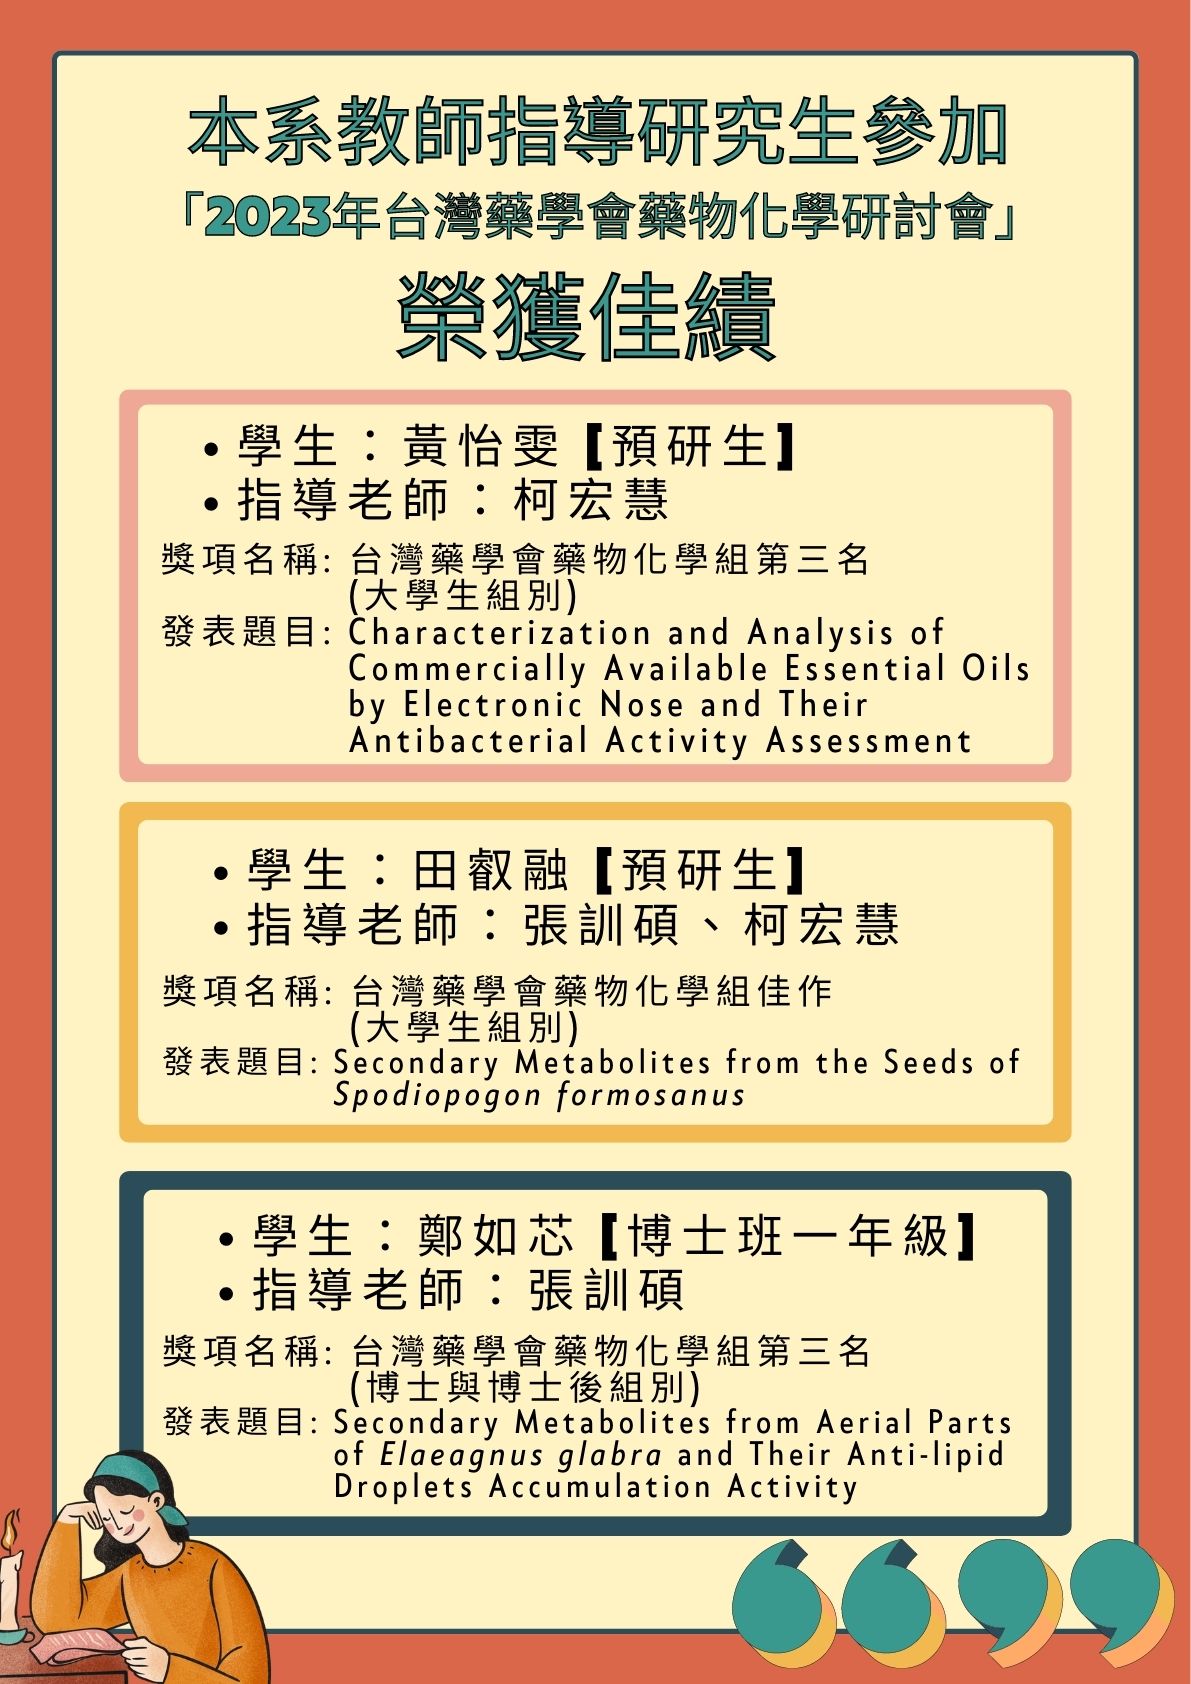 2023年台灣藥學會藥物化學研討會榮獲佳績